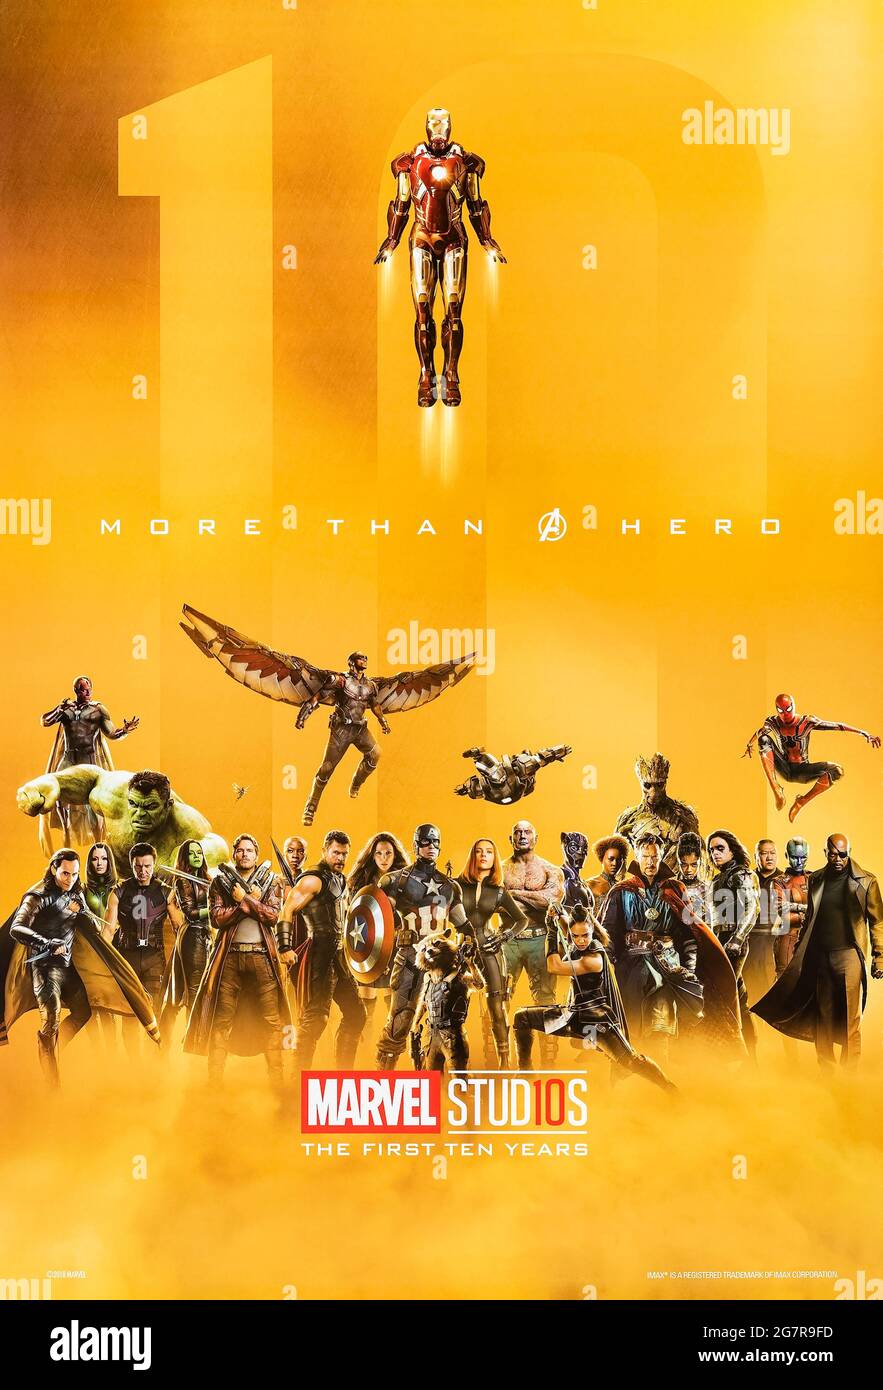 ‘More Than A Hero - Marvel Studios das erste zehn Jahre Poster 2018, das die ersten 10 Jahre des Marvel Cinematic Universe feiert und alle Superhelden zeigt, die in den 20 bisher veröffentlichten Spielfilmen erschienen sind. Stockfoto